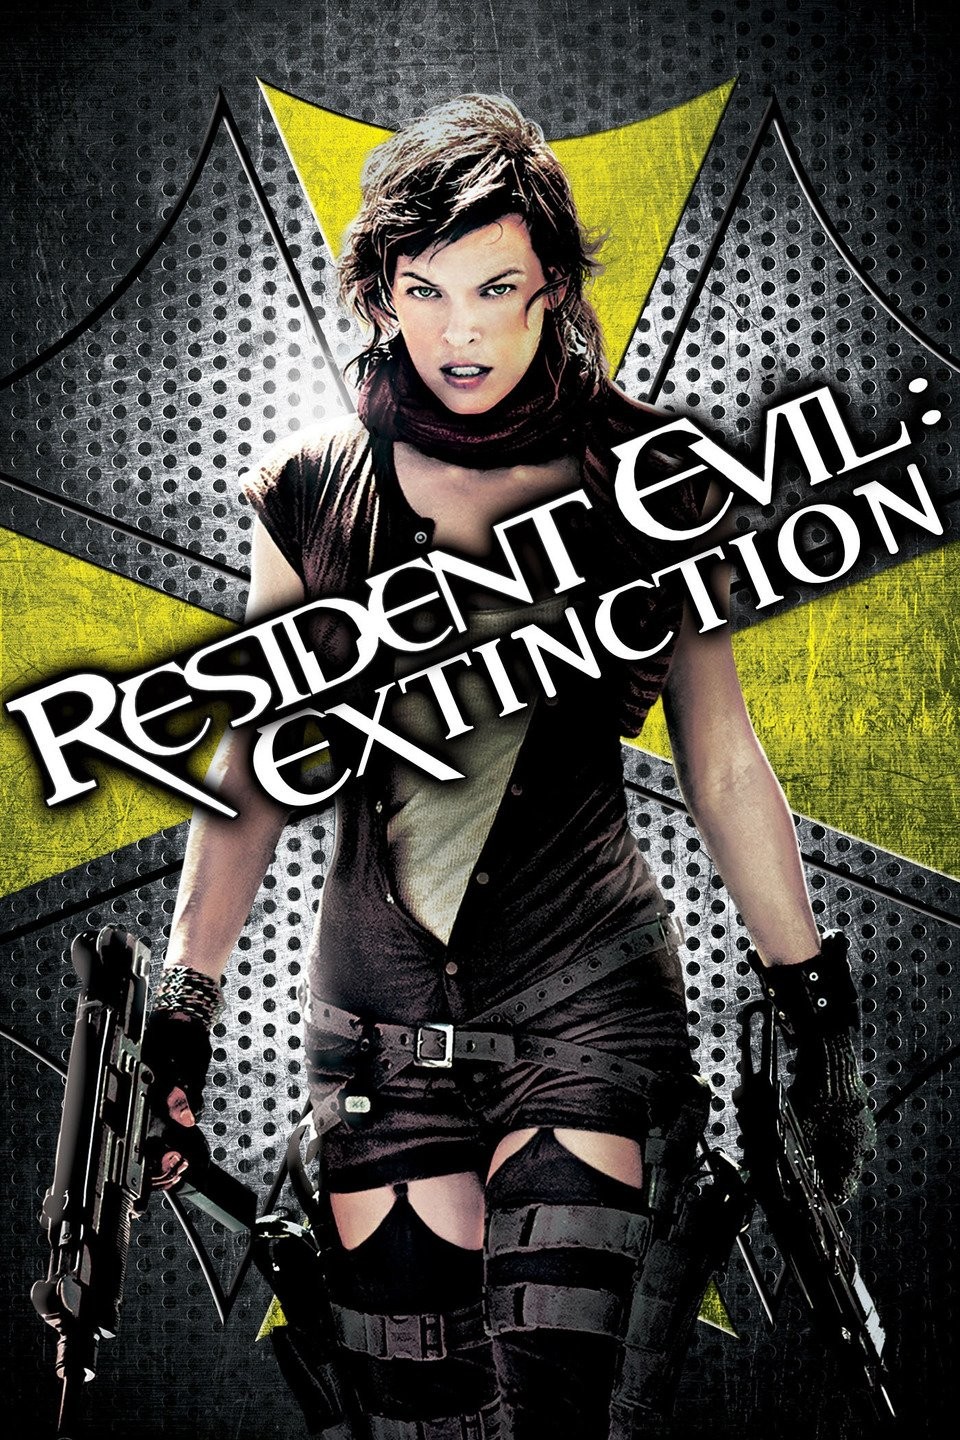 Resident Evil' star looks back on 15-year journey